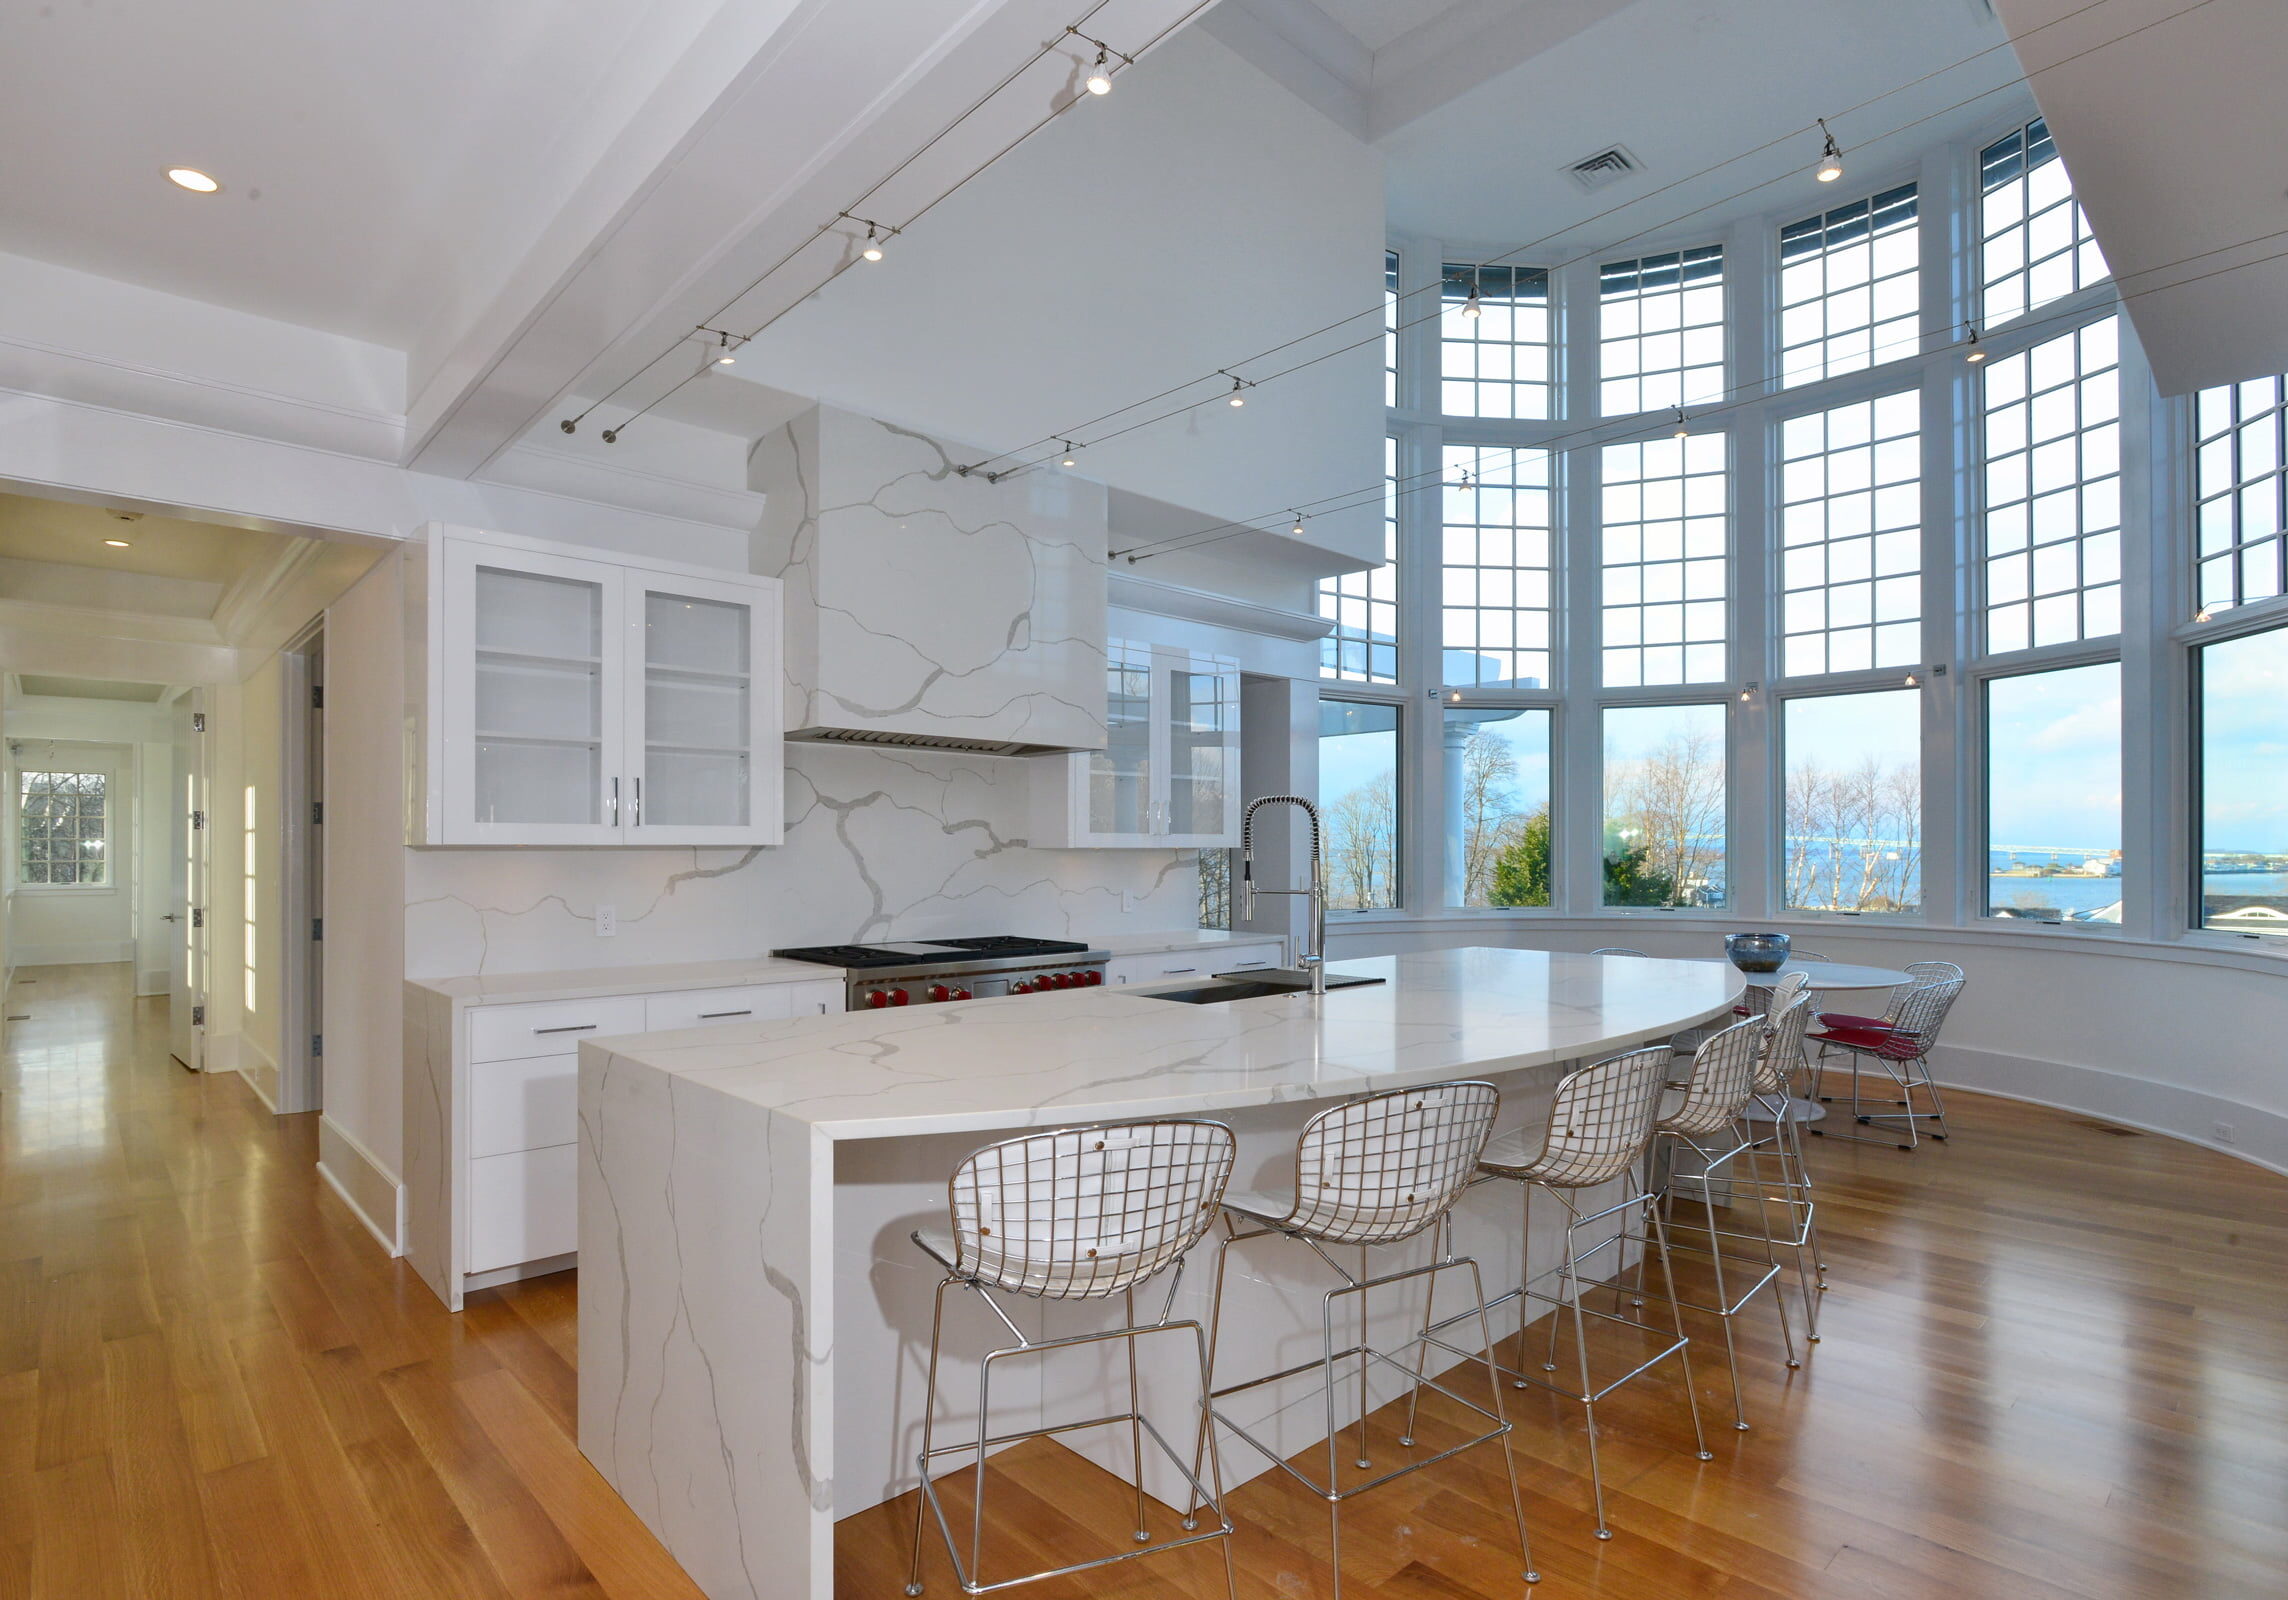 Interior kitchen of Newport Rhode Island waterfront home